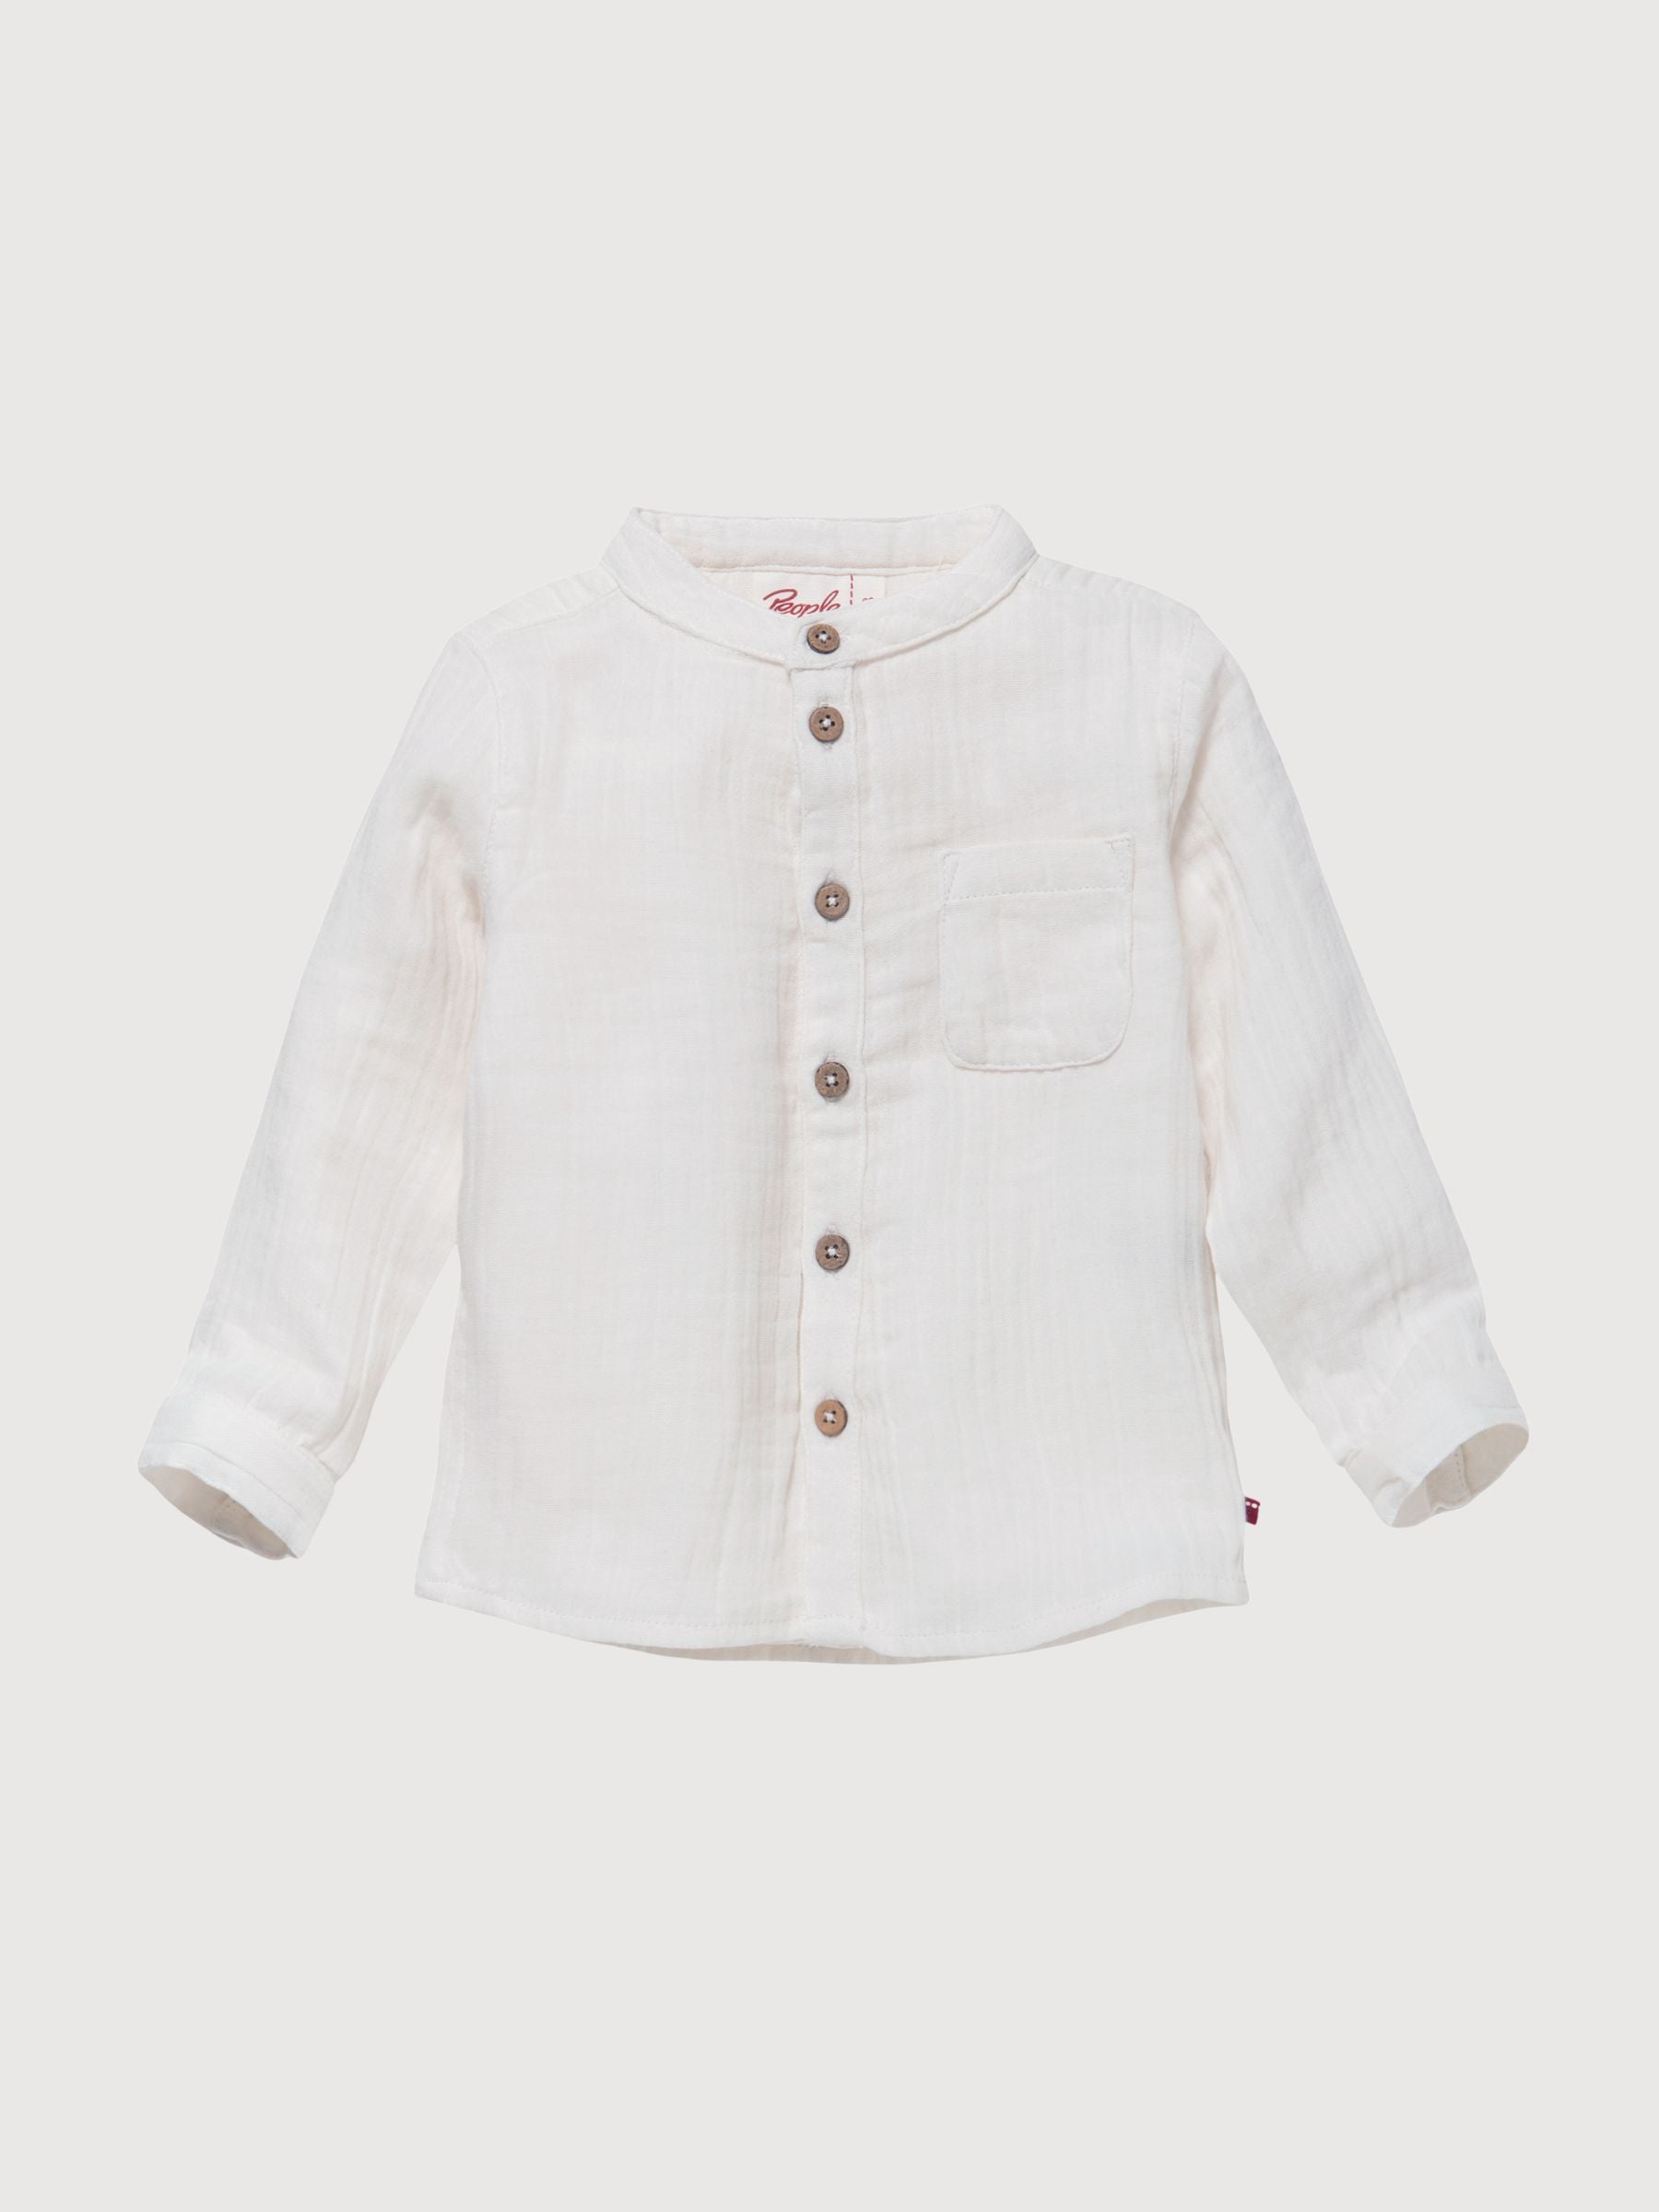 Hemd Kind und Baby Junge Weiß Bio-Baumwolle | People Wear Organic